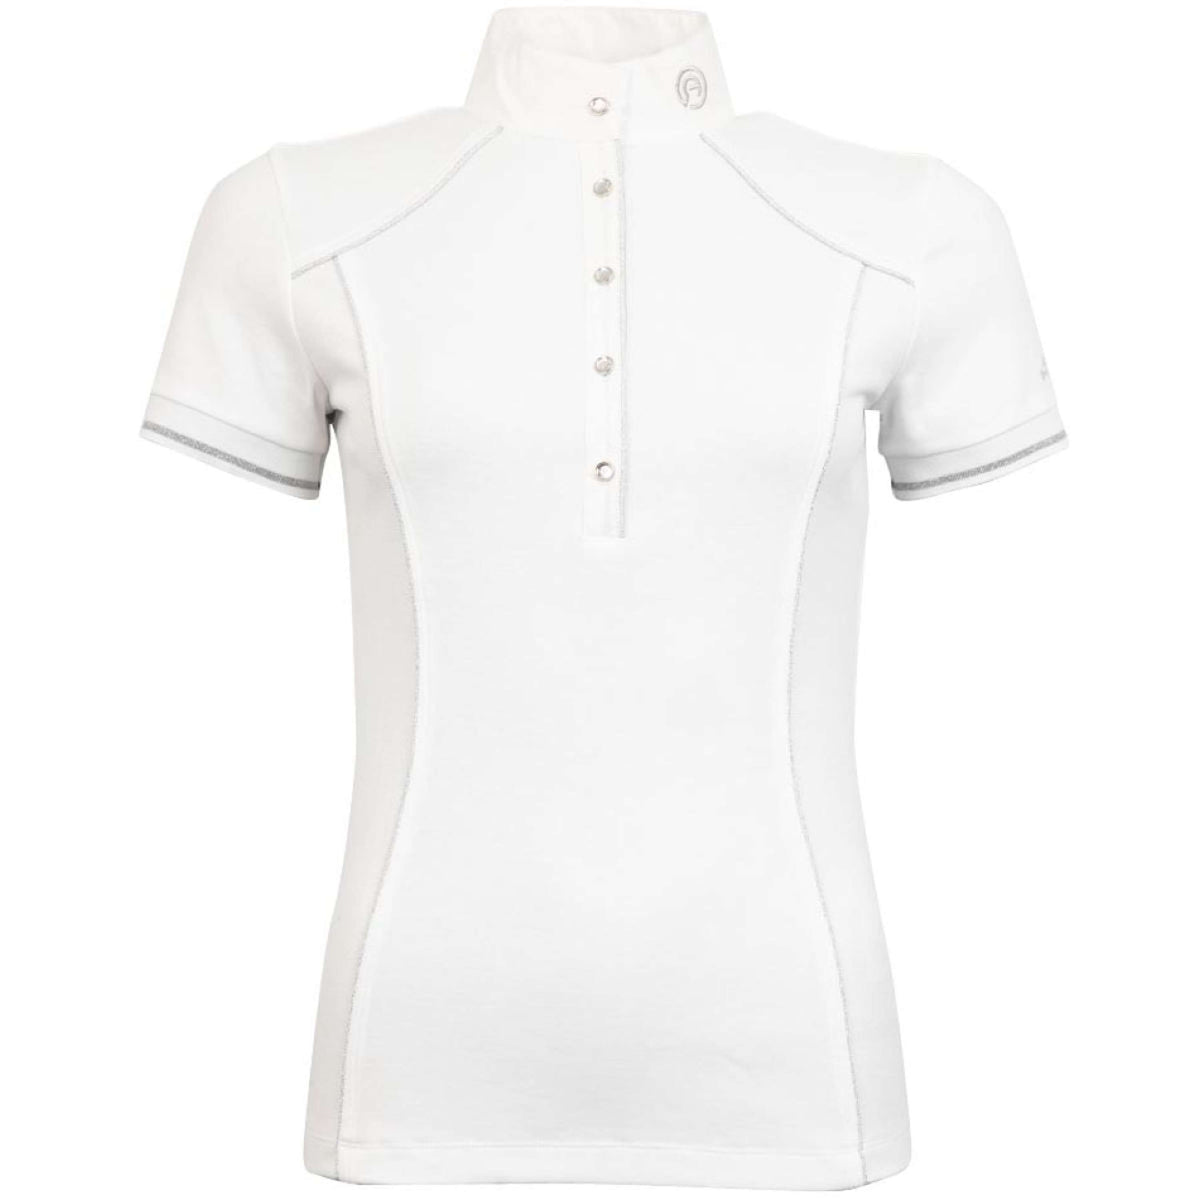 Anky T-shirt de Concours Subtle C-Wear Blanc